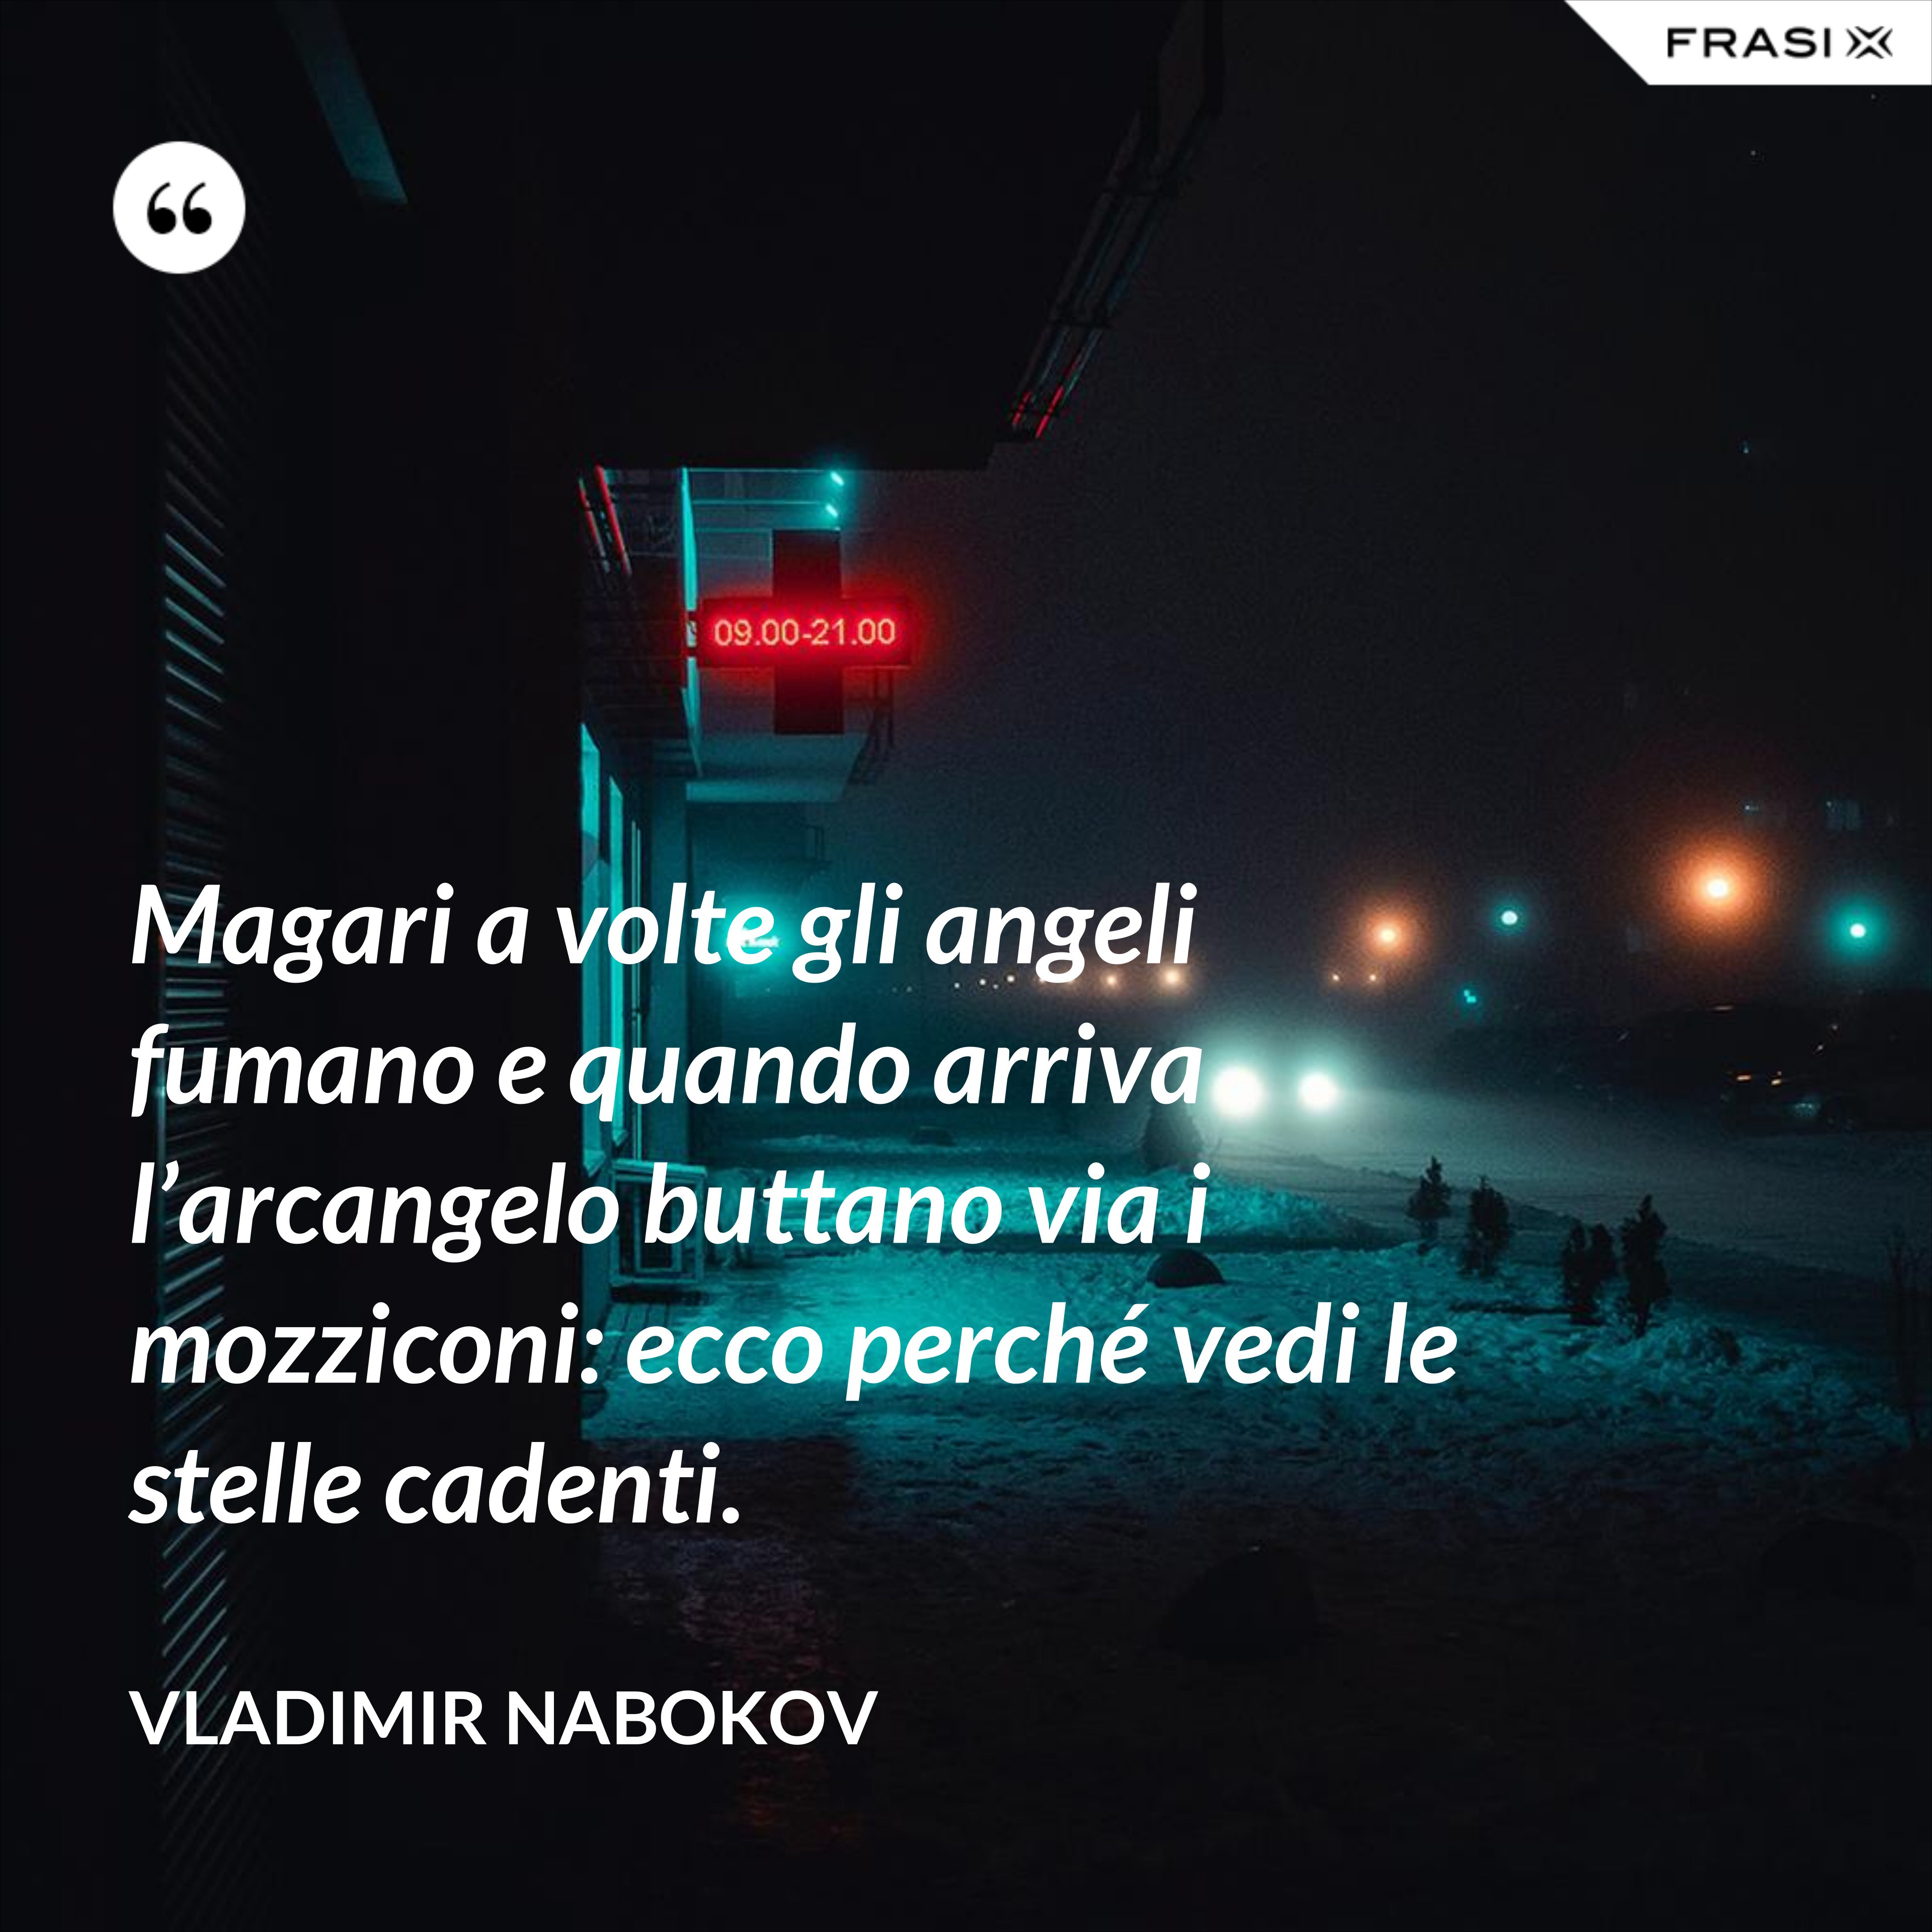 Magari a volte gli angeli fumano e quando arriva l’arcangelo buttano via i mozziconi: ecco perché vedi le stelle cadenti. - Vladimir Nabokov